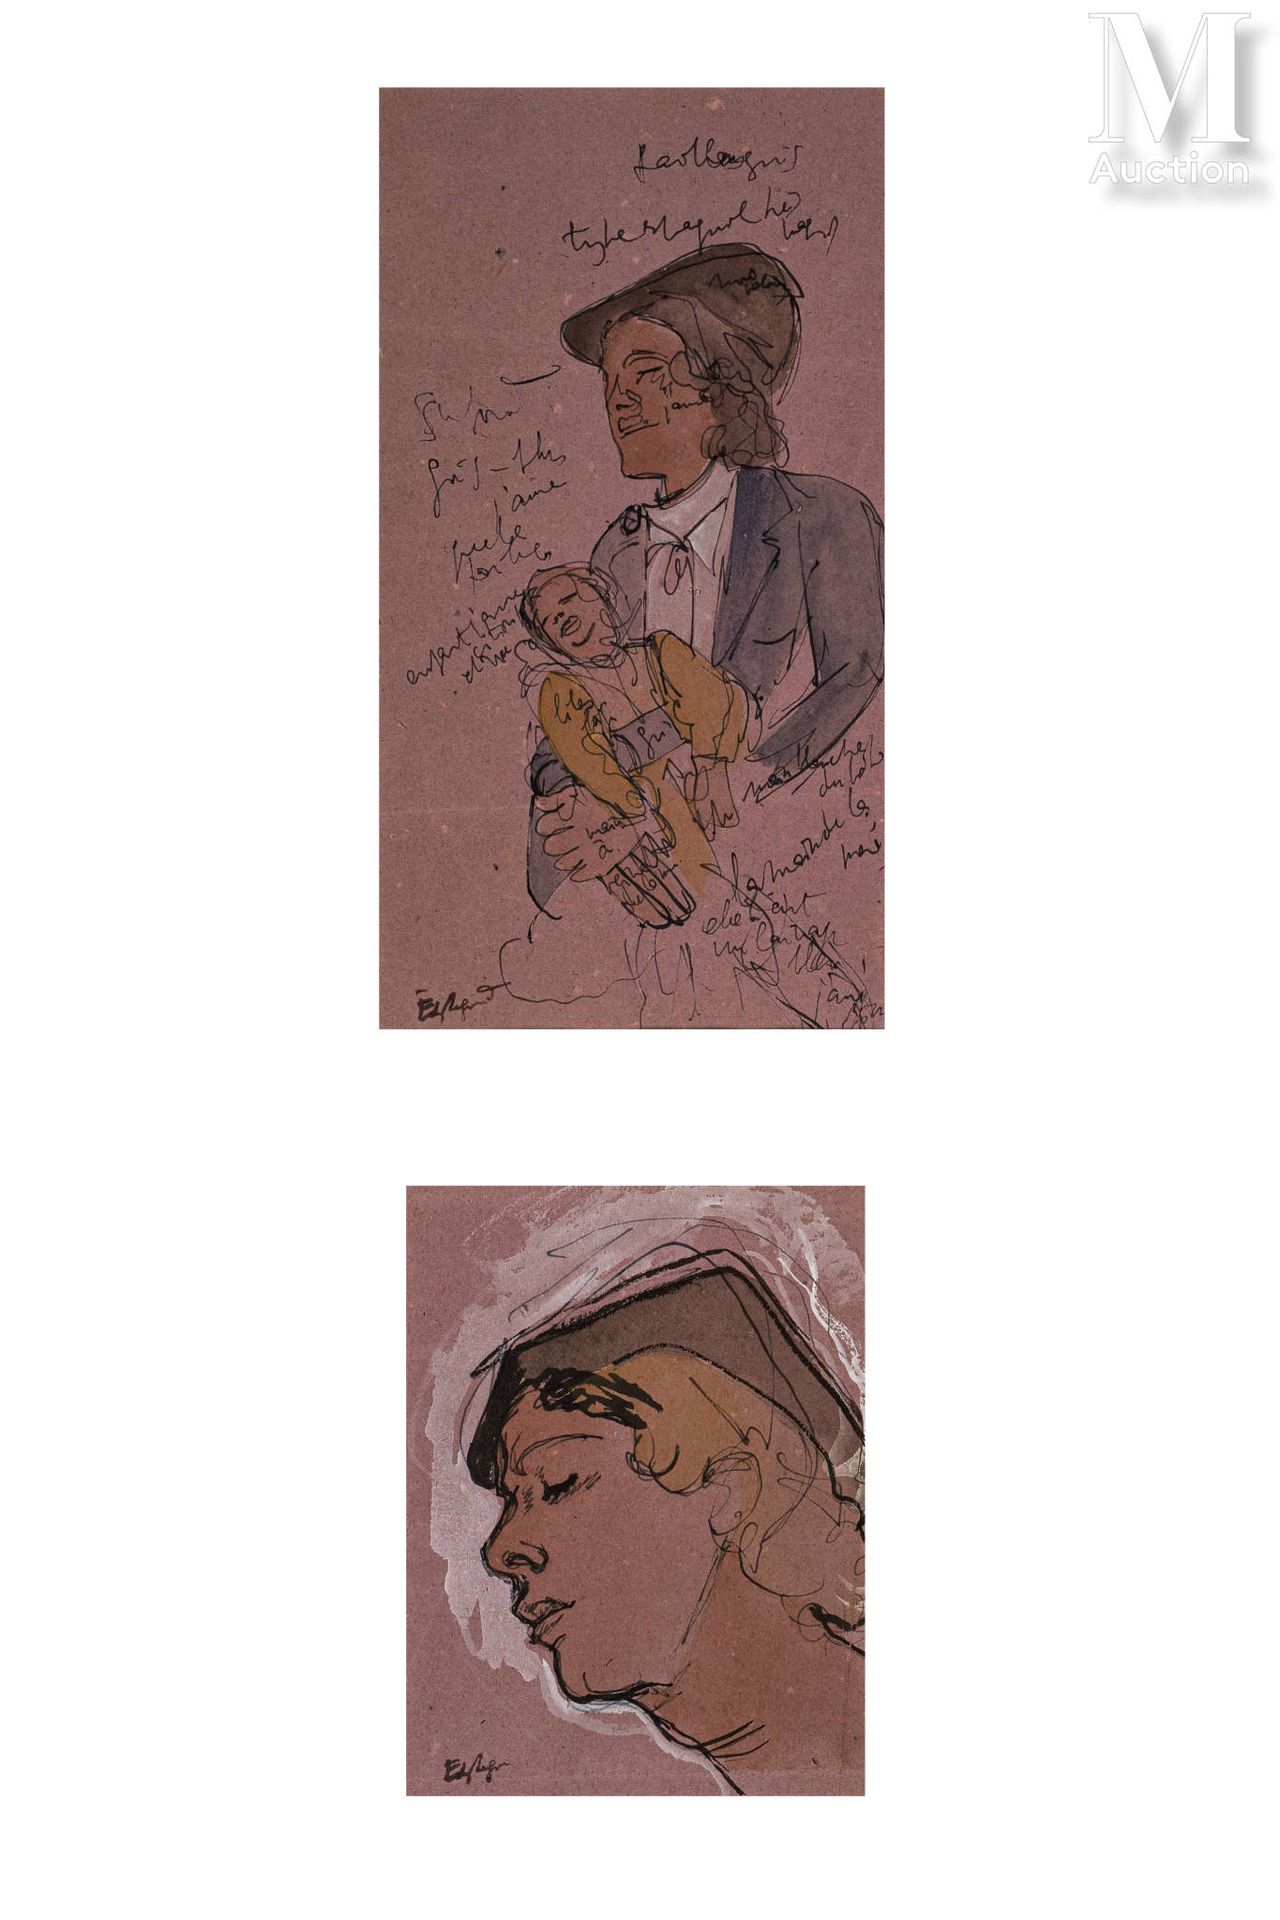 EDY LEGRAND (Bordeaux 1892-Bonnieux 1970) Enten

Gouache auf Papier 

25 x 31cm
&hellip;